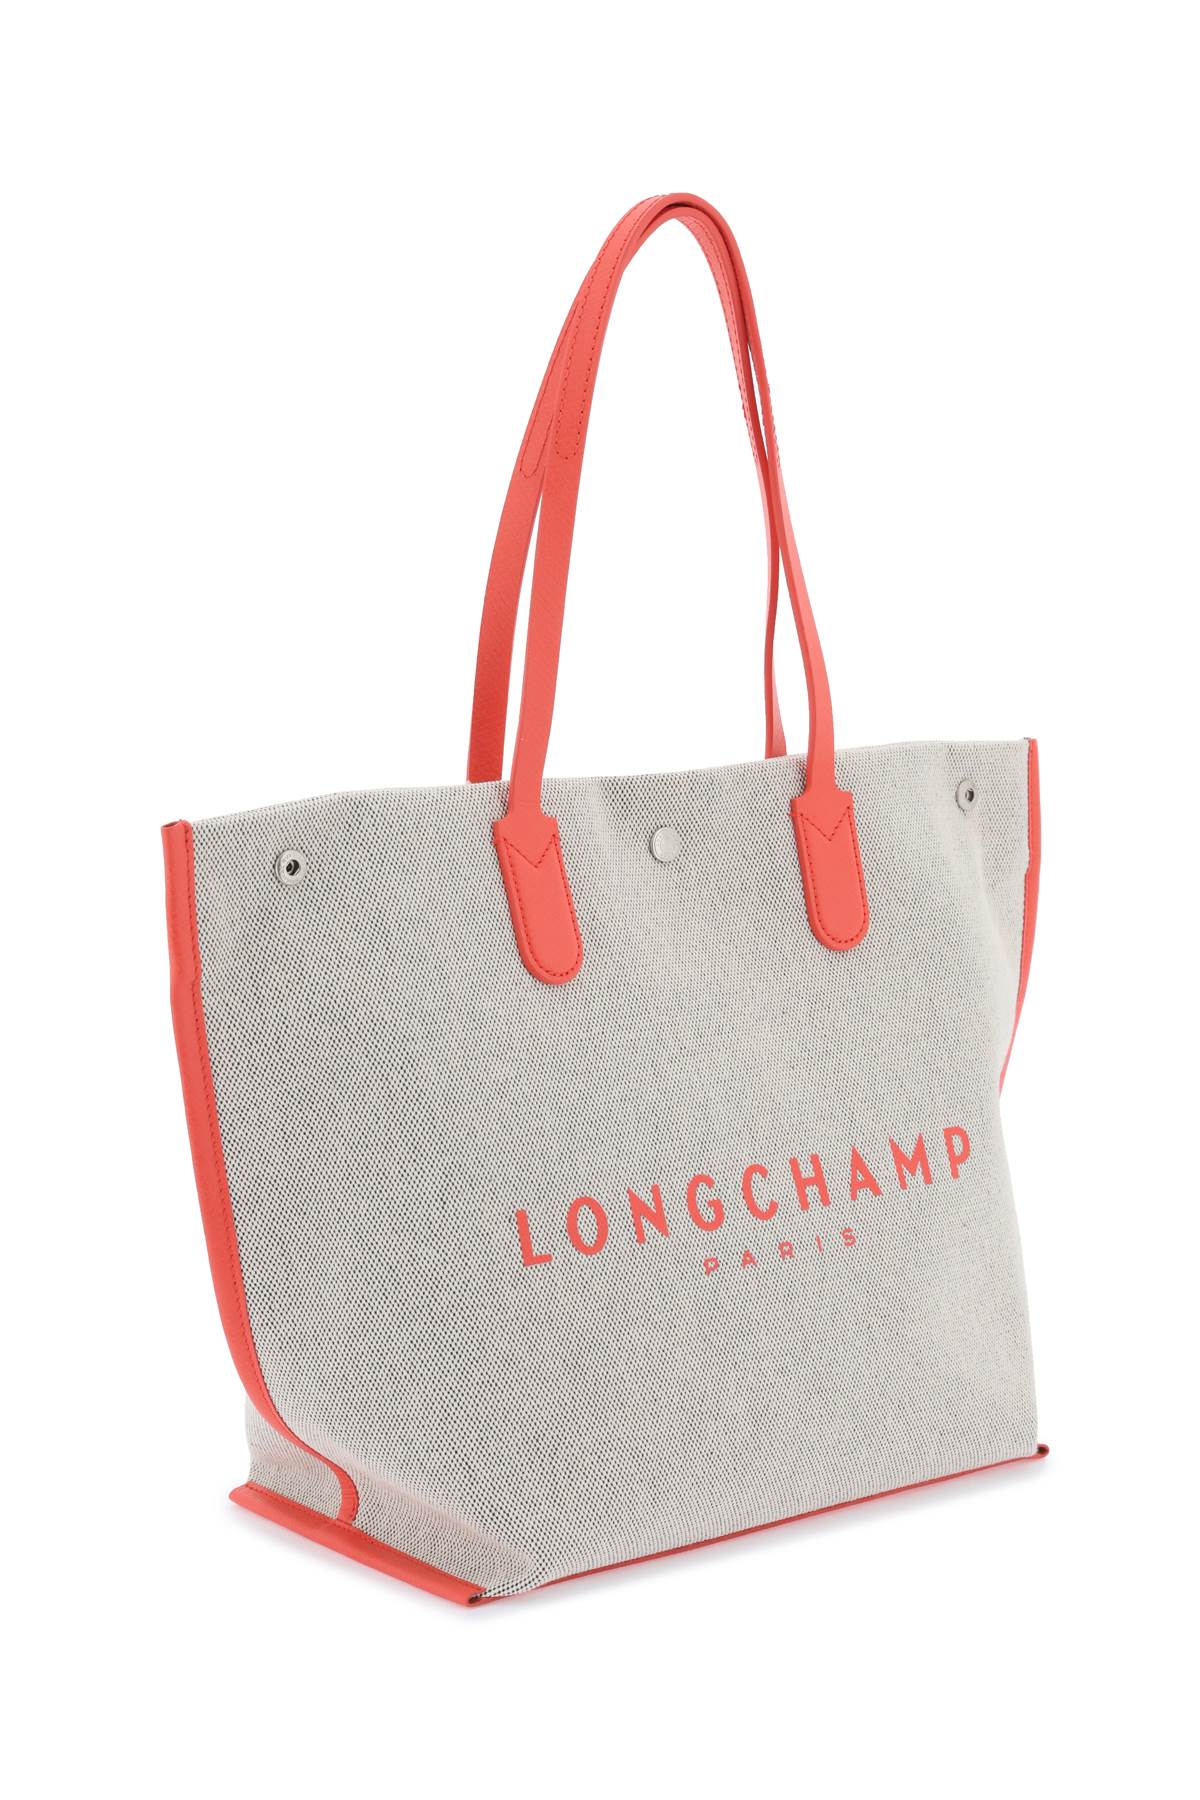 Longchamp roseau l tote bag